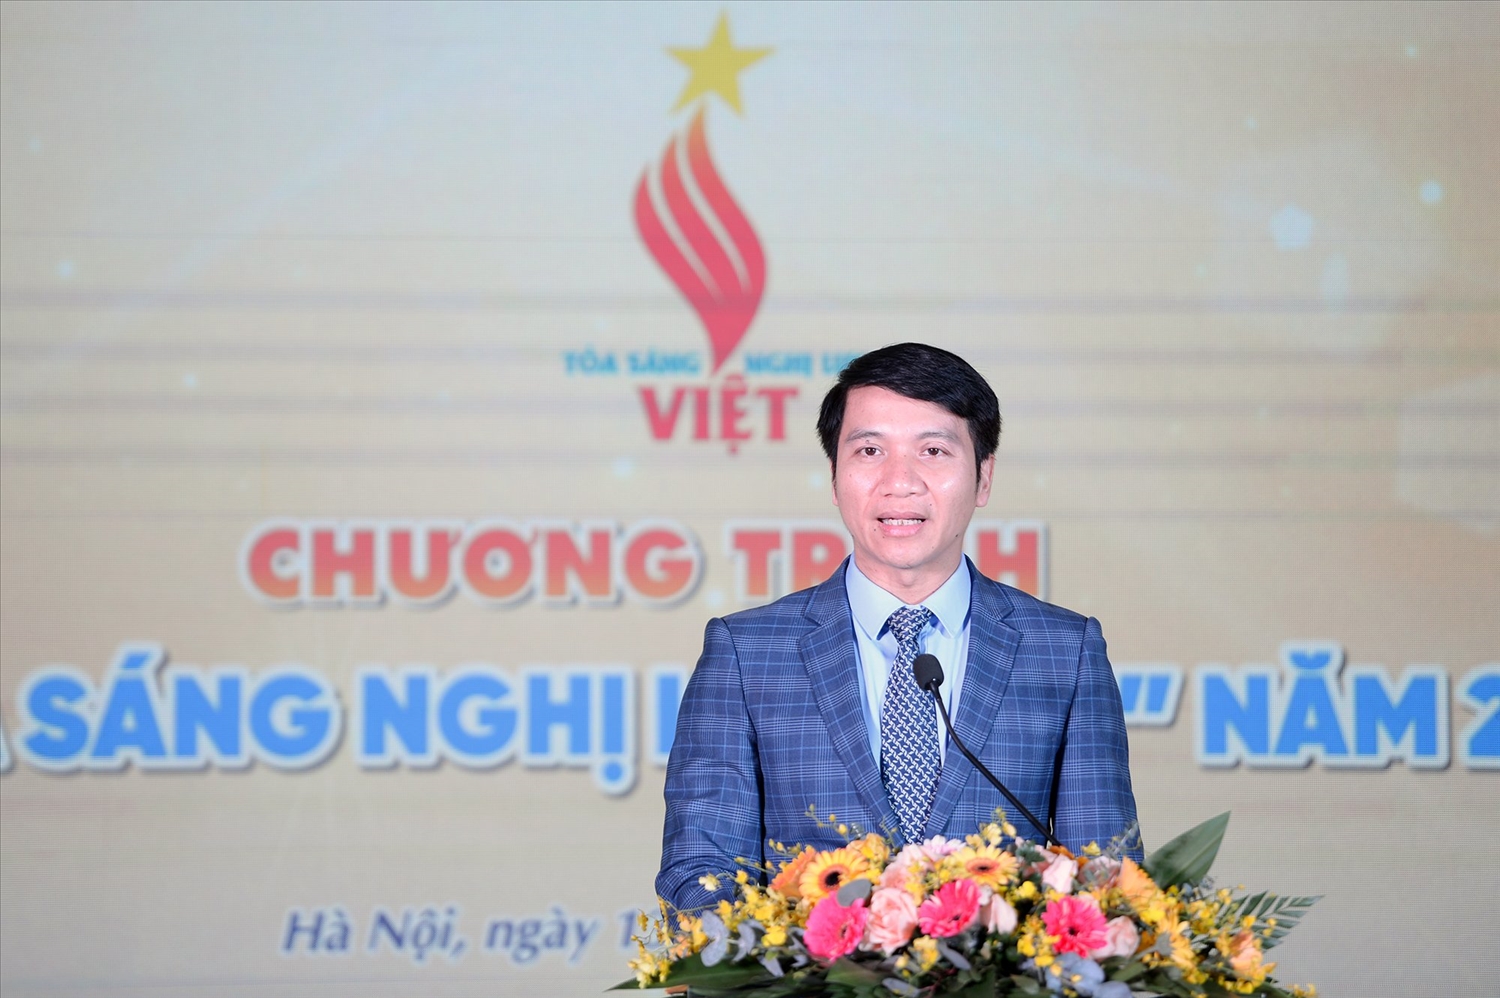 Nguyễn Ngọc Lương, Bí thư BCH Trung ương Đoàn, Chủ tịch Trung ương Hội LHTN Việt Nam phát biểu tại Chương trình